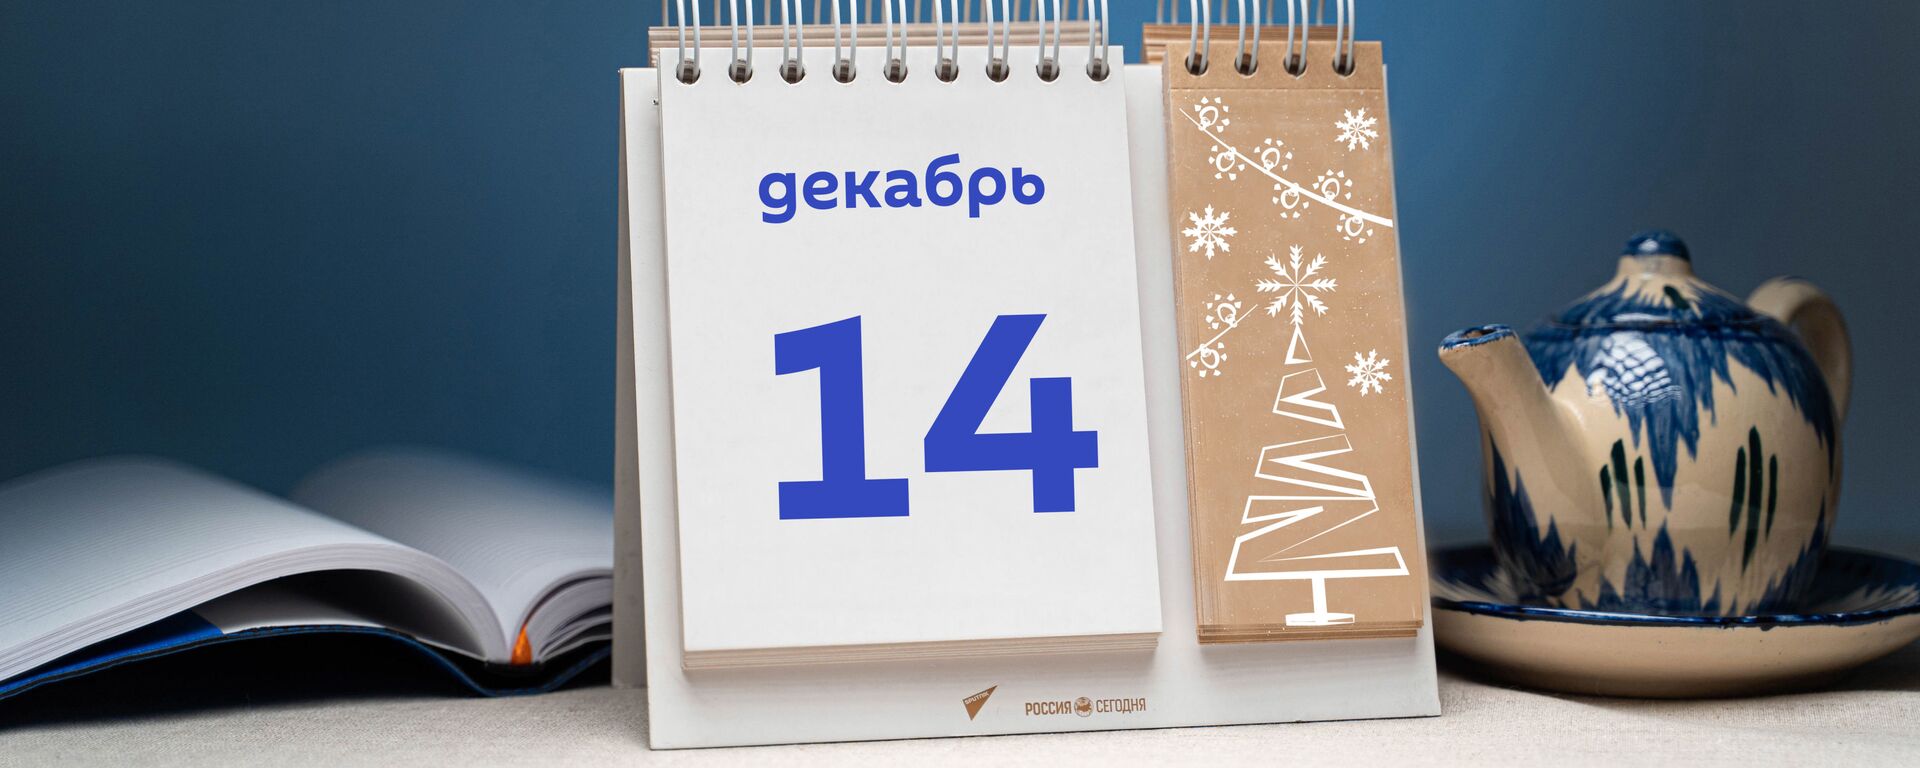 День 14 декабря - Sputnik Тоҷикистон, 1920, 14.12.2021